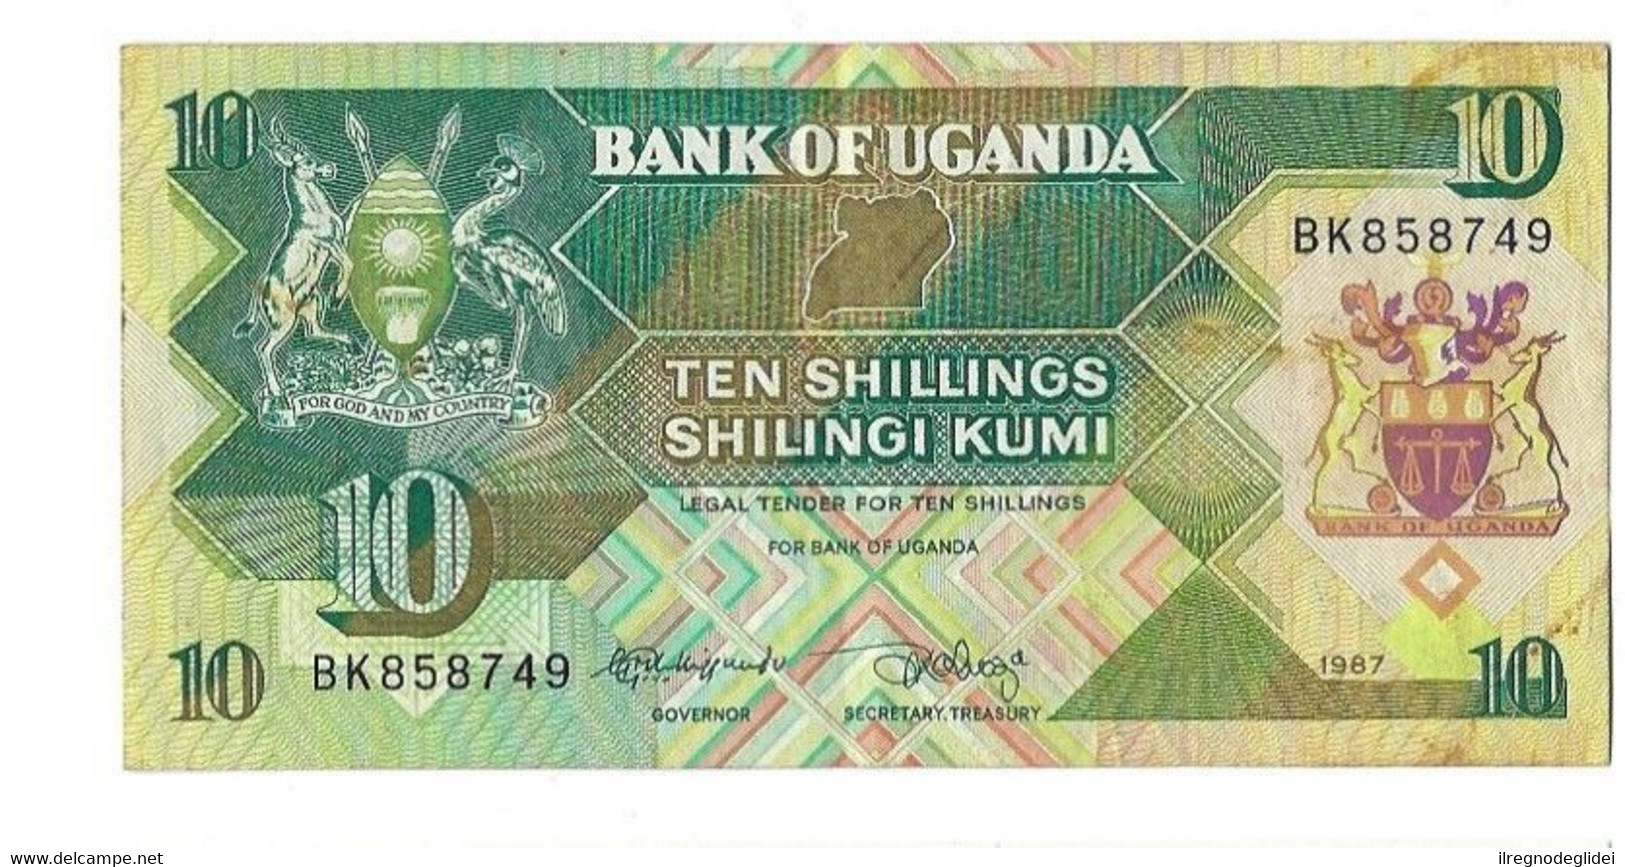 UGANDA - 10 SHILINGI KUMI - - WYSIWYG - N° SERIALE BK 858749 - CARTAMONETA - PAPER MONEY - Uganda